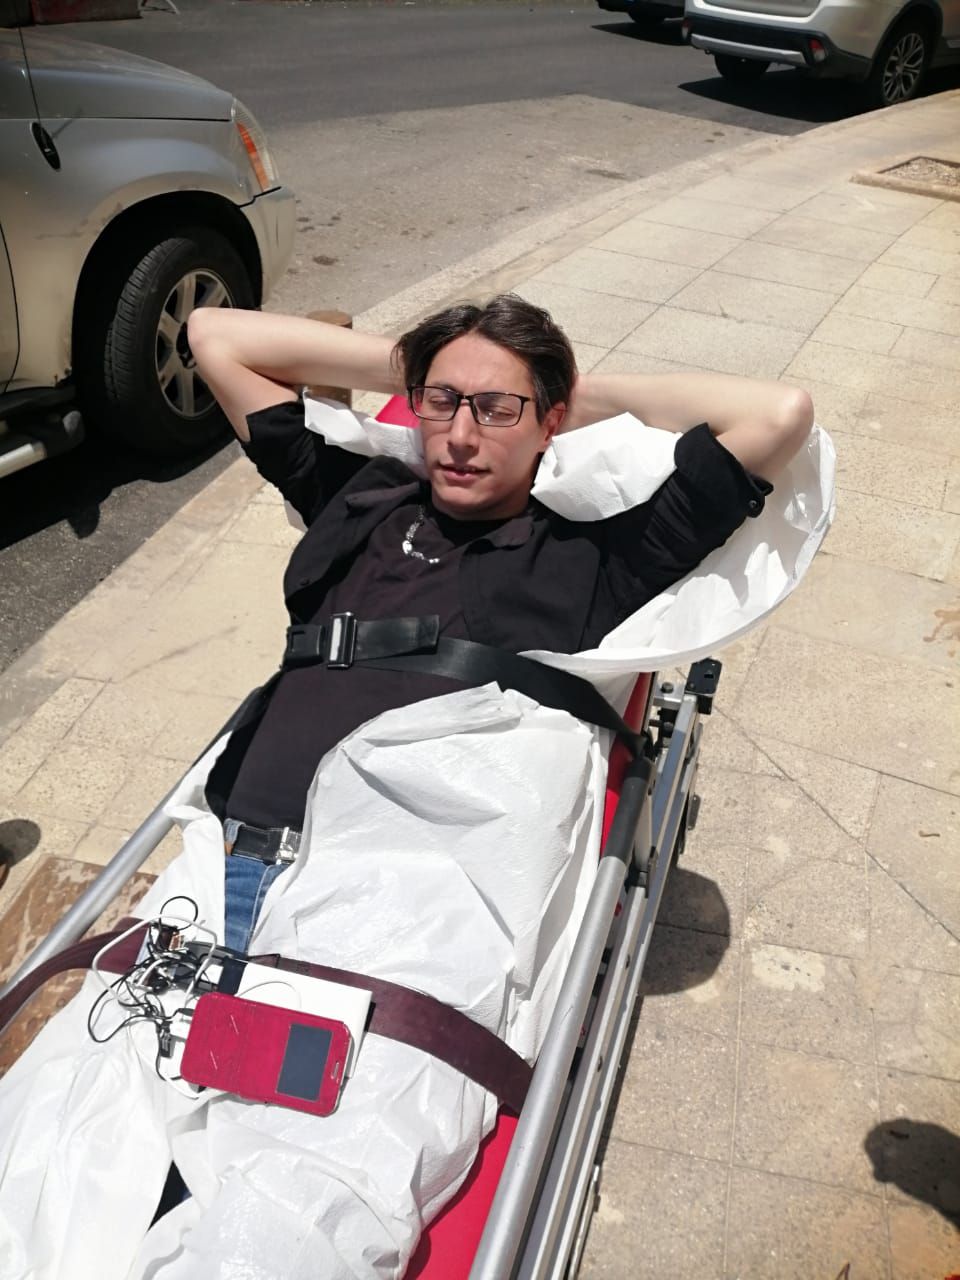 الإعلامي خالد عياد يتعرض لحادث صدم من سيارة مسرعة ويصاب بجروح ورضوض كبيرة في جسده .